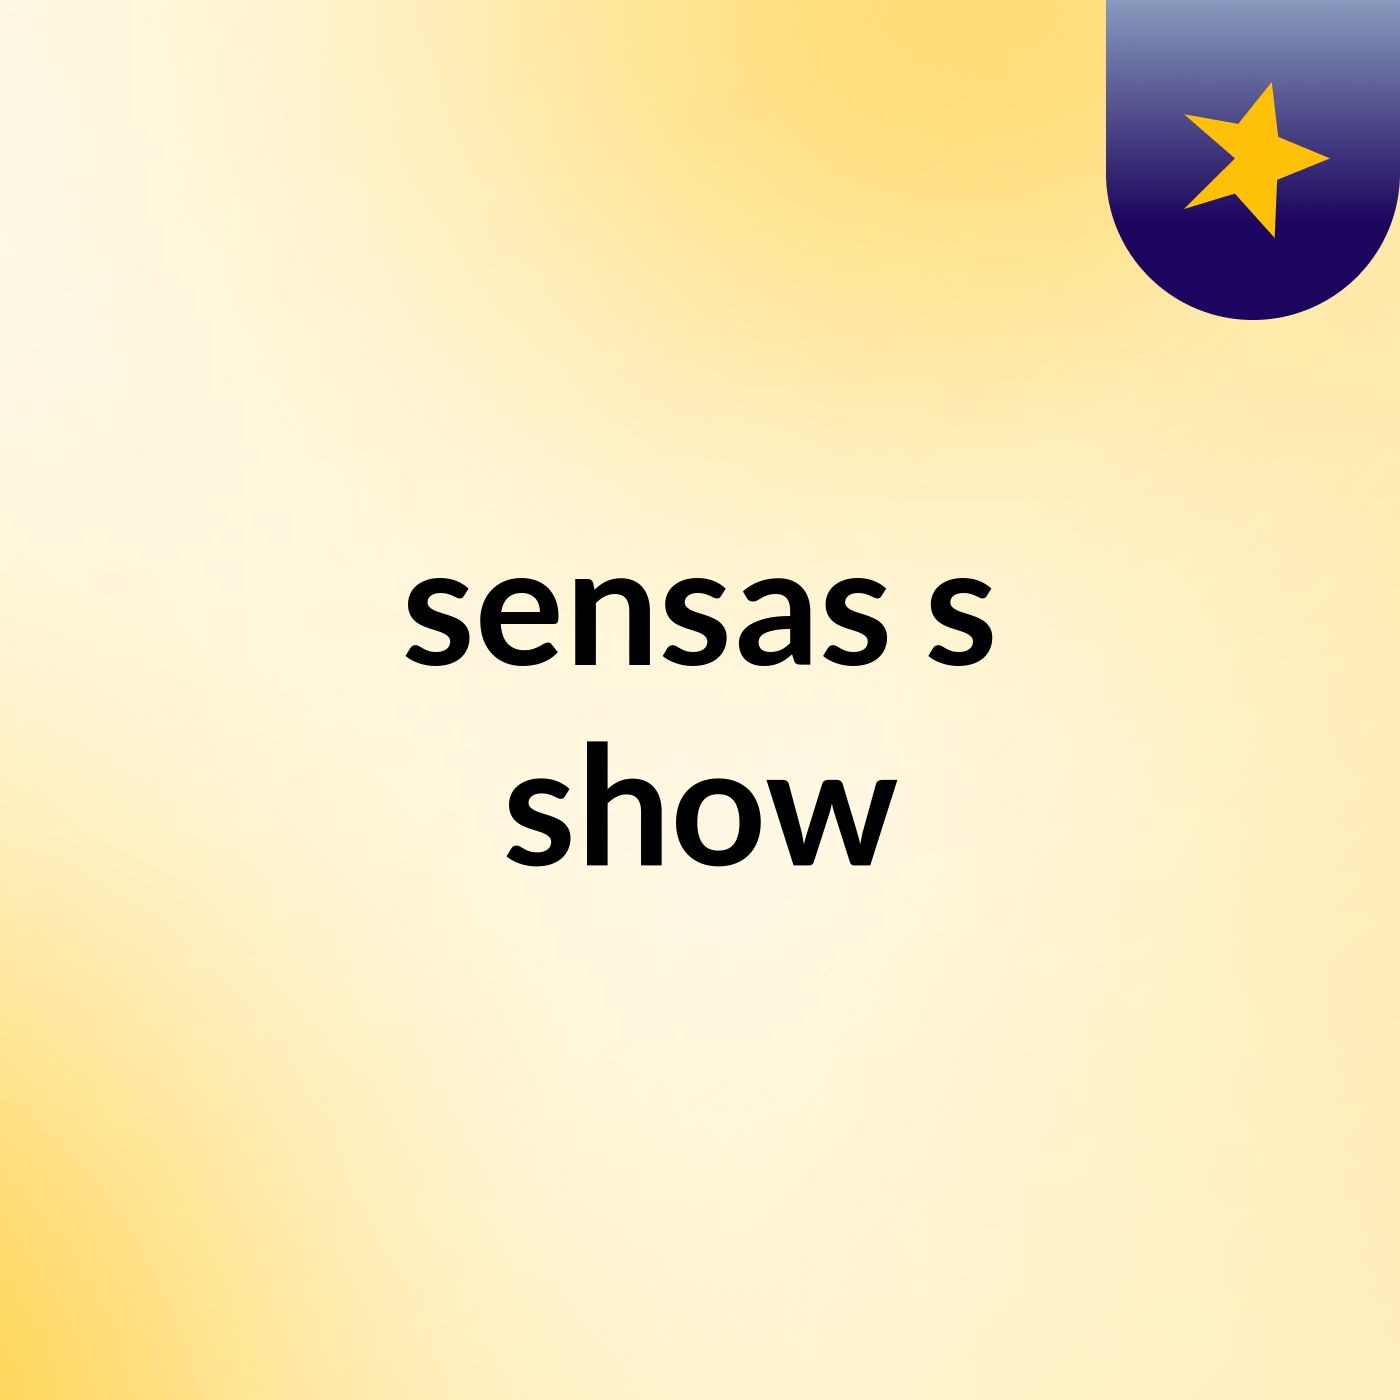 sensas's show